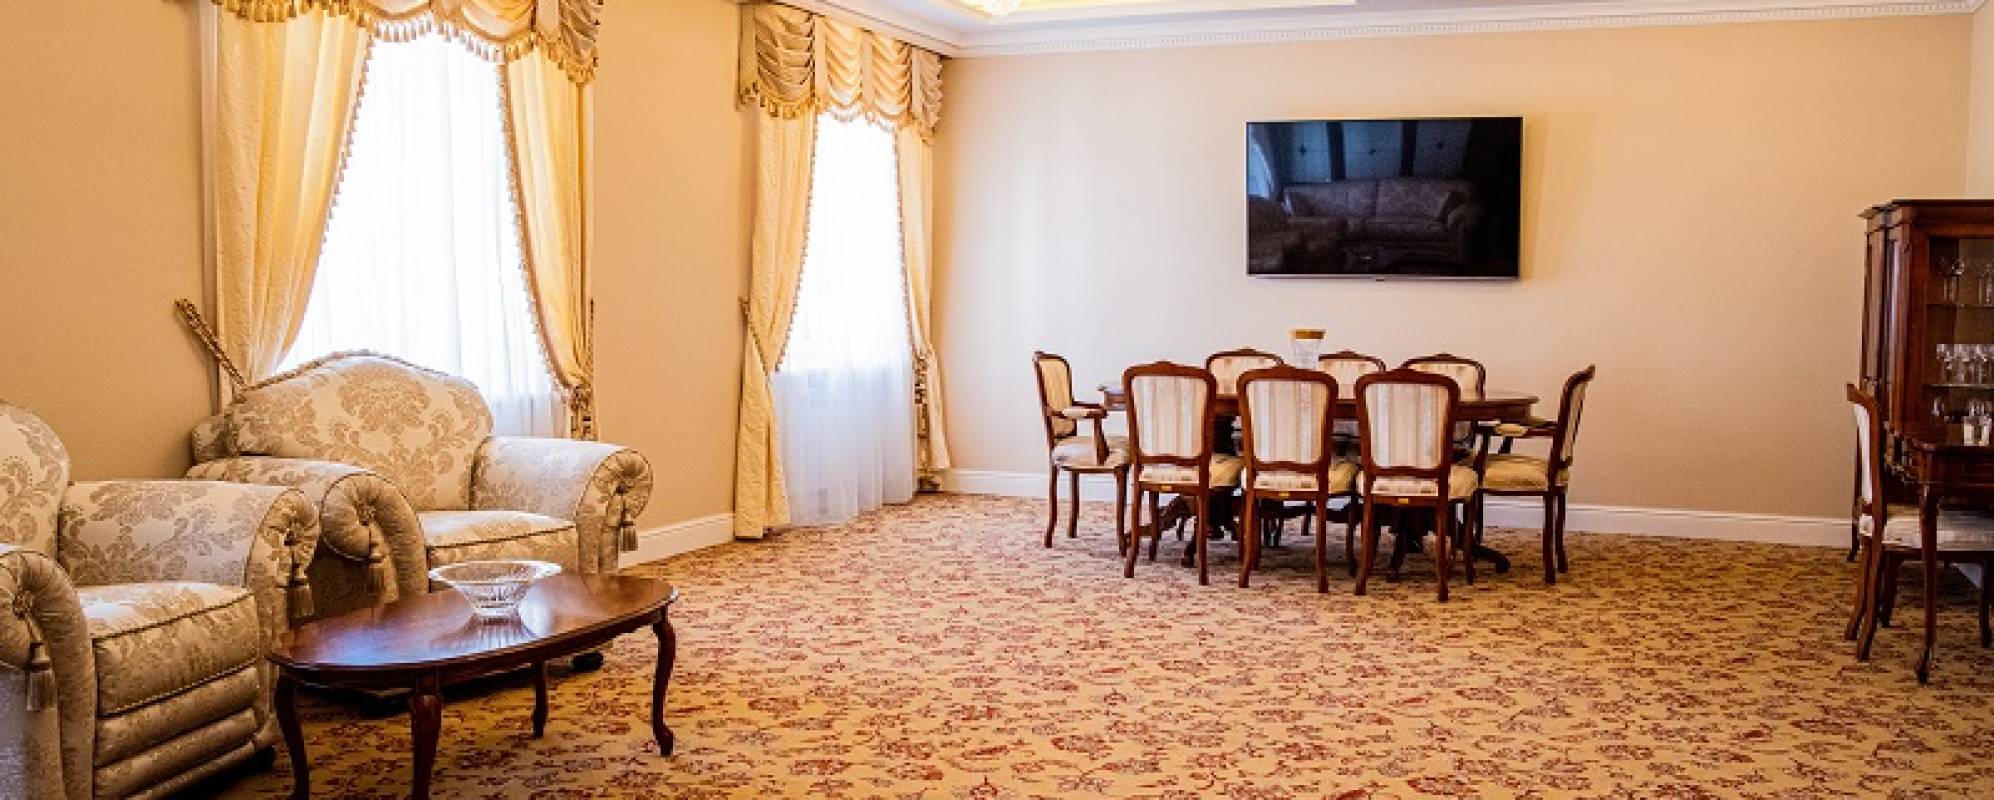 Фотографии комнаты для переговоров Агидель